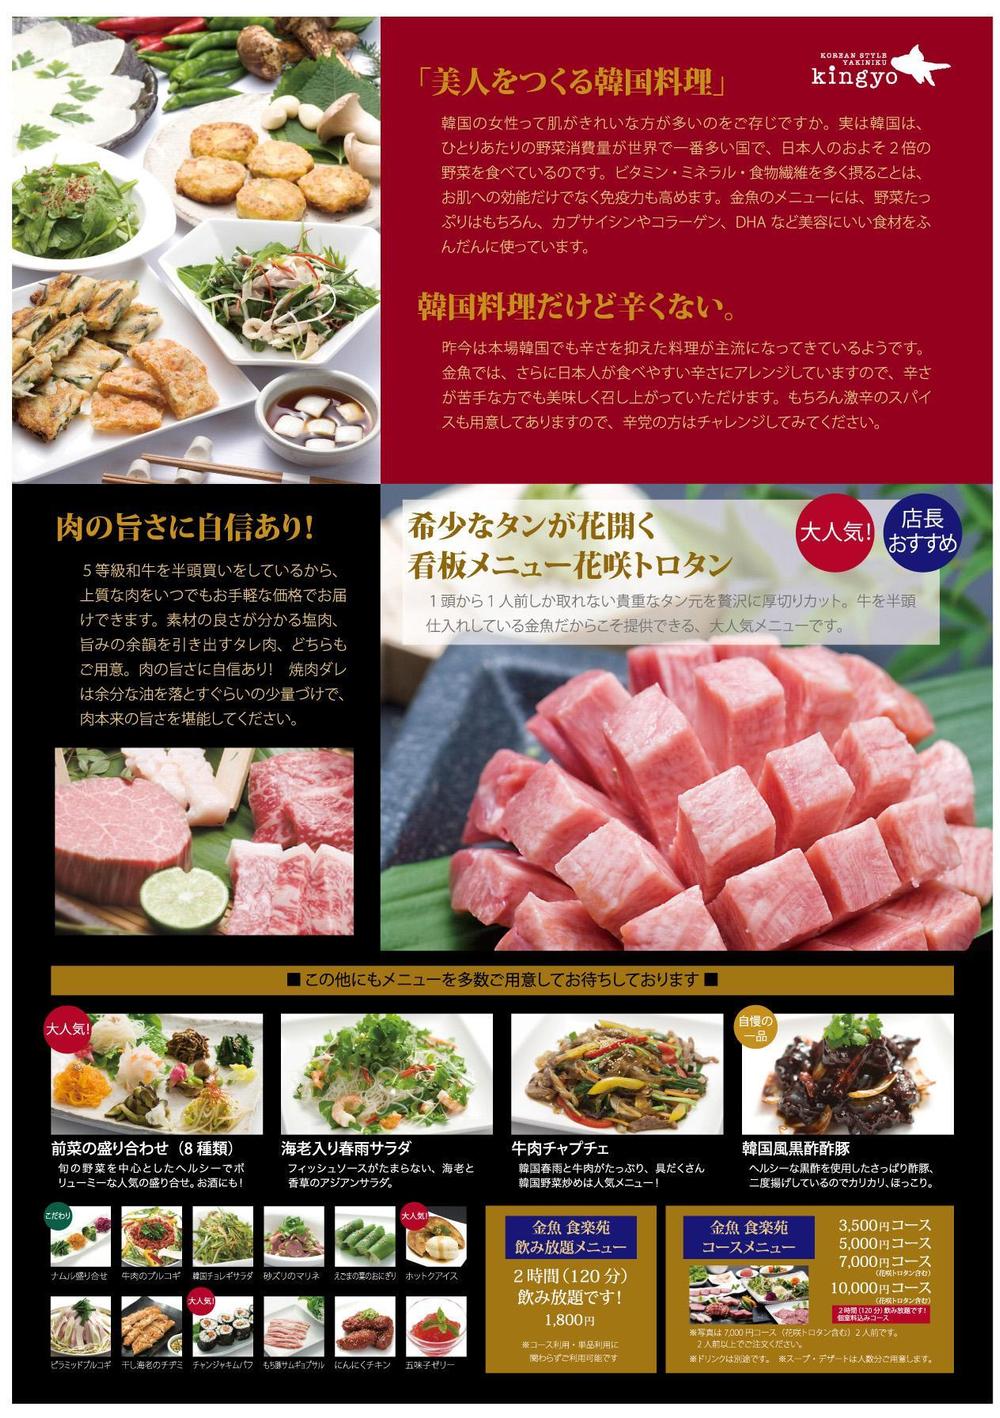 美人を作る韓国料理と厳選焼肉の店「食楽苑金魚」のパンフレット